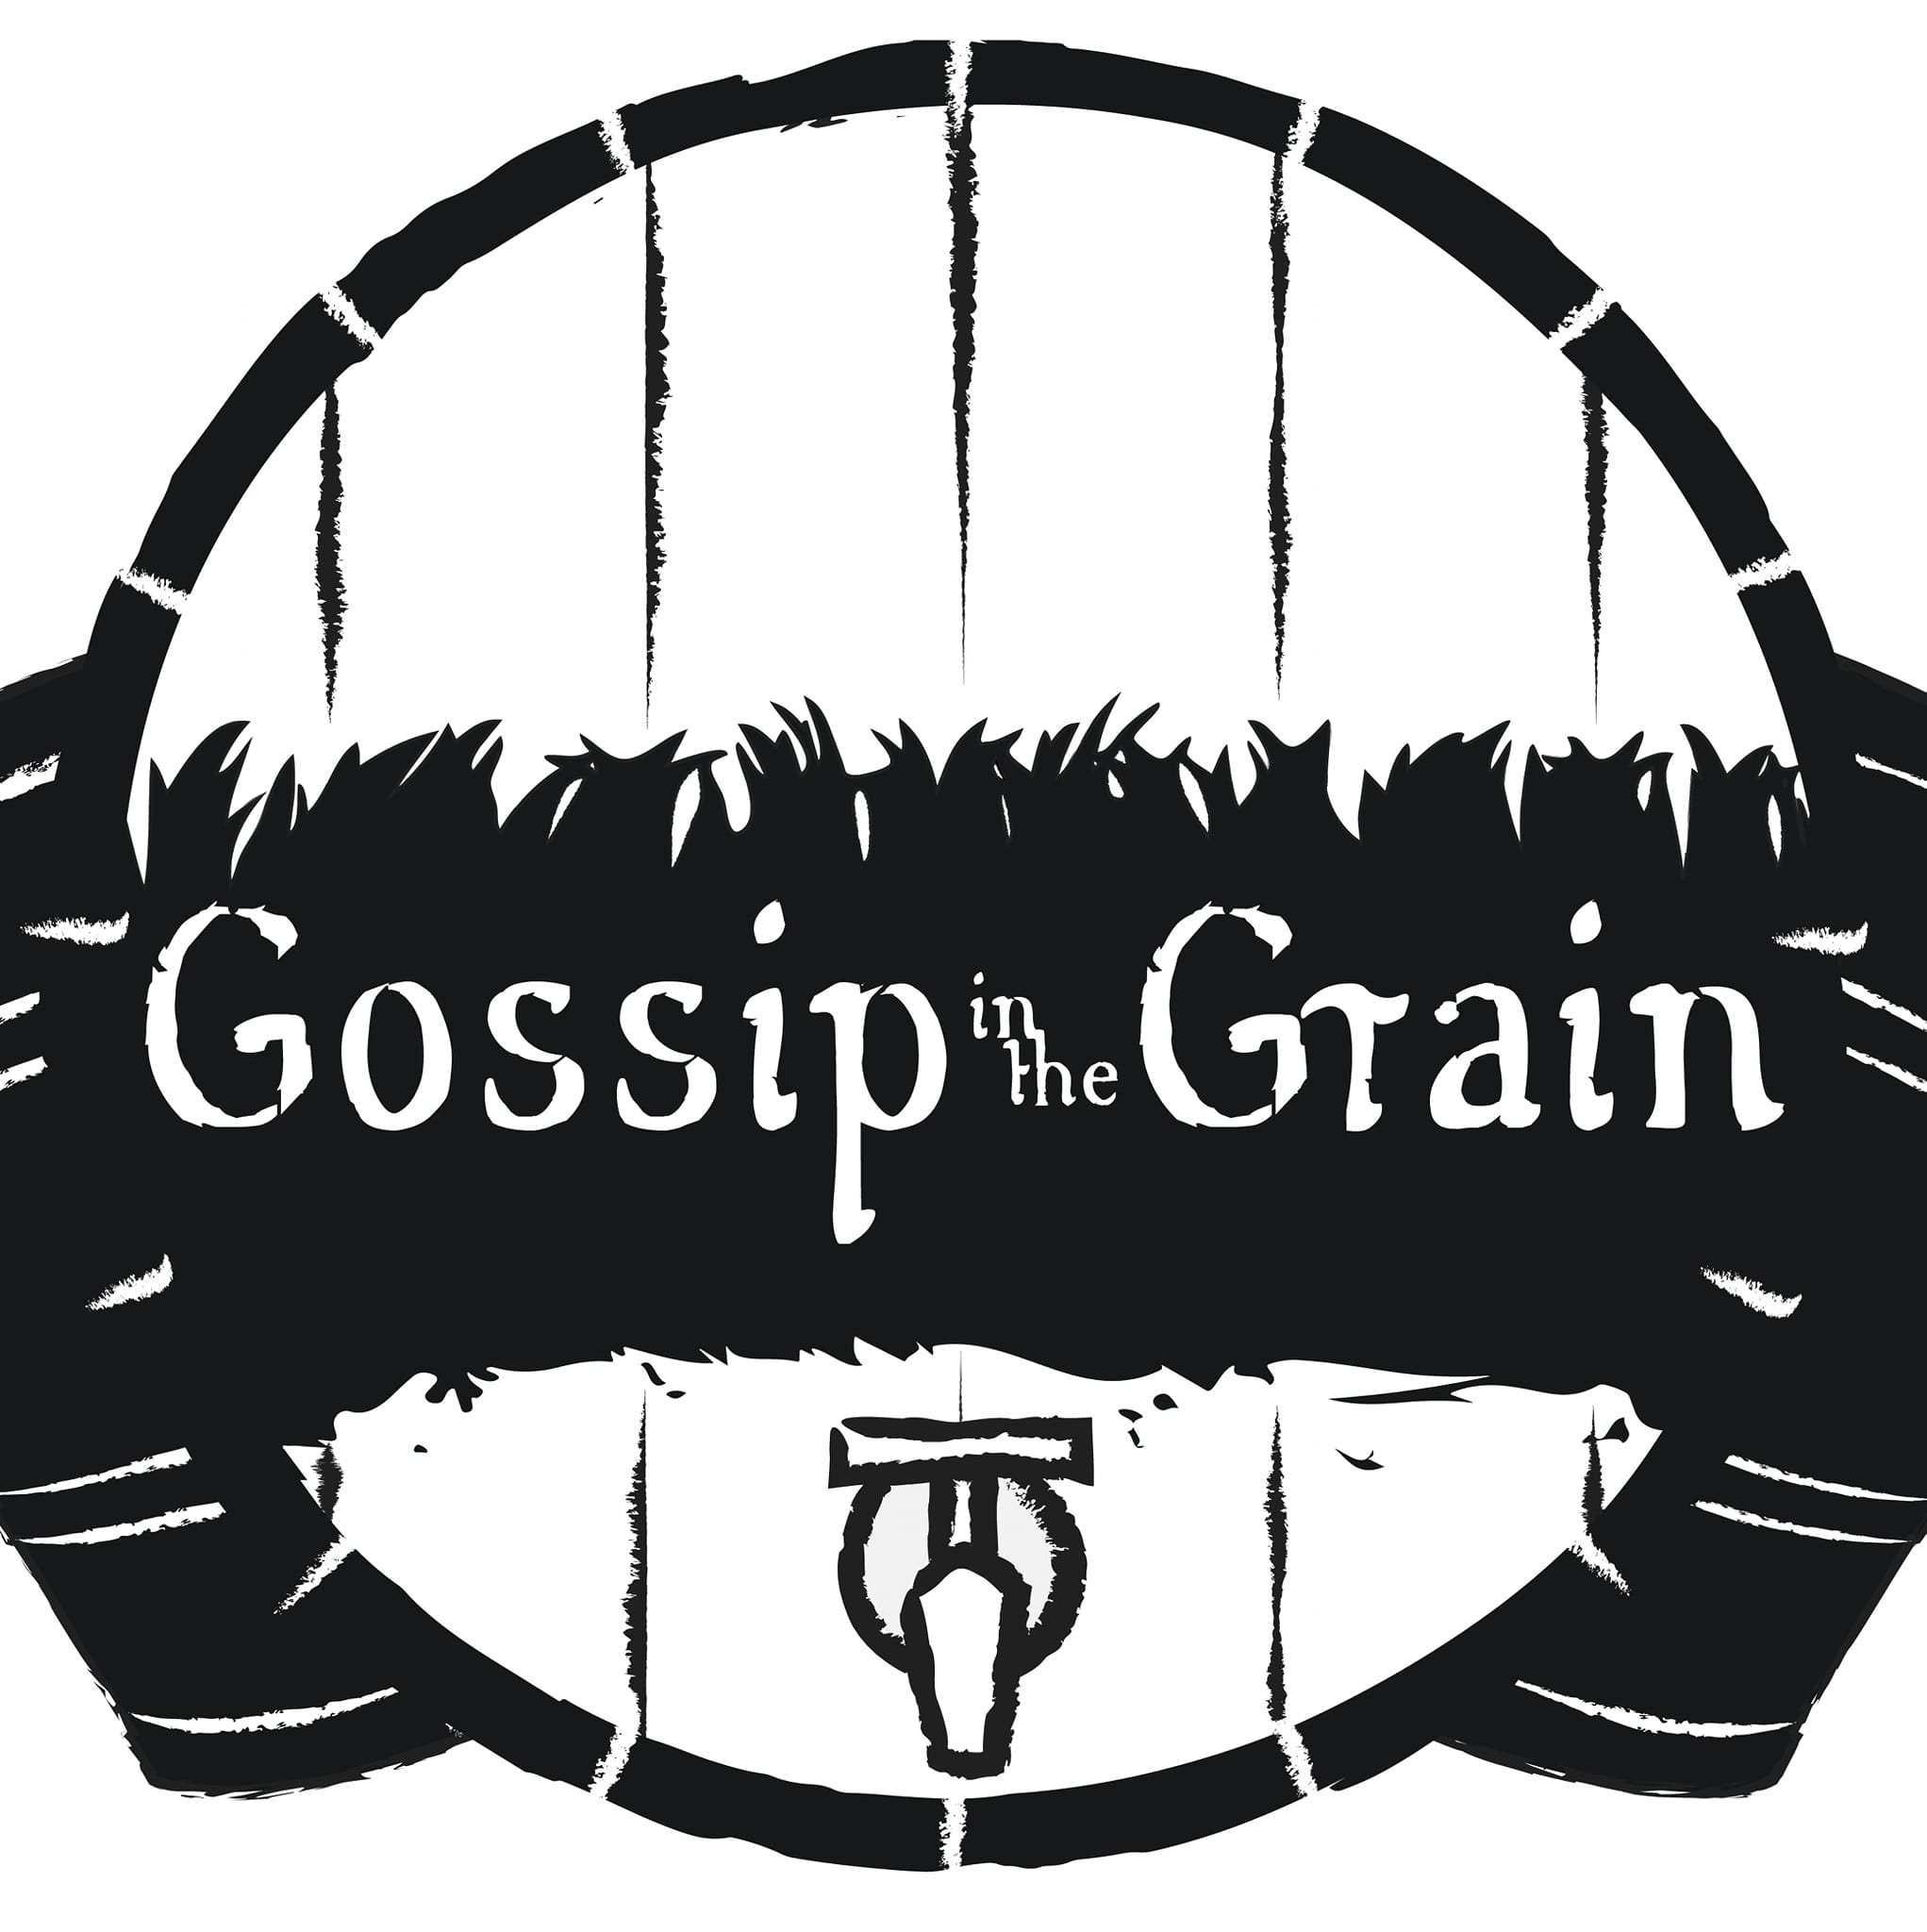 Gossip in the Grain (Vancouver, WA)